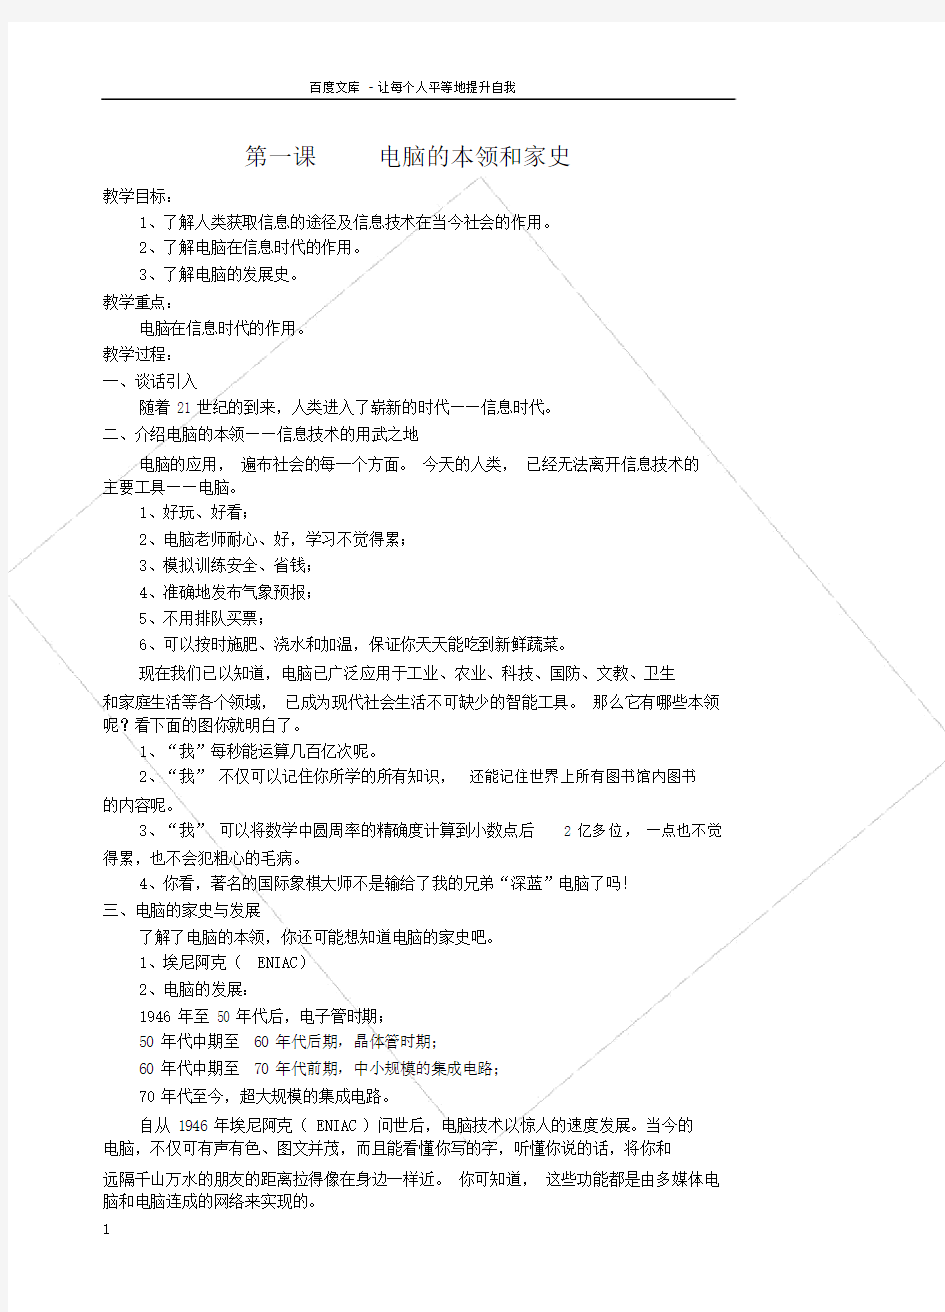 小学信息技术第四册教案(全老教材)(人教版)_ABC教育.docx